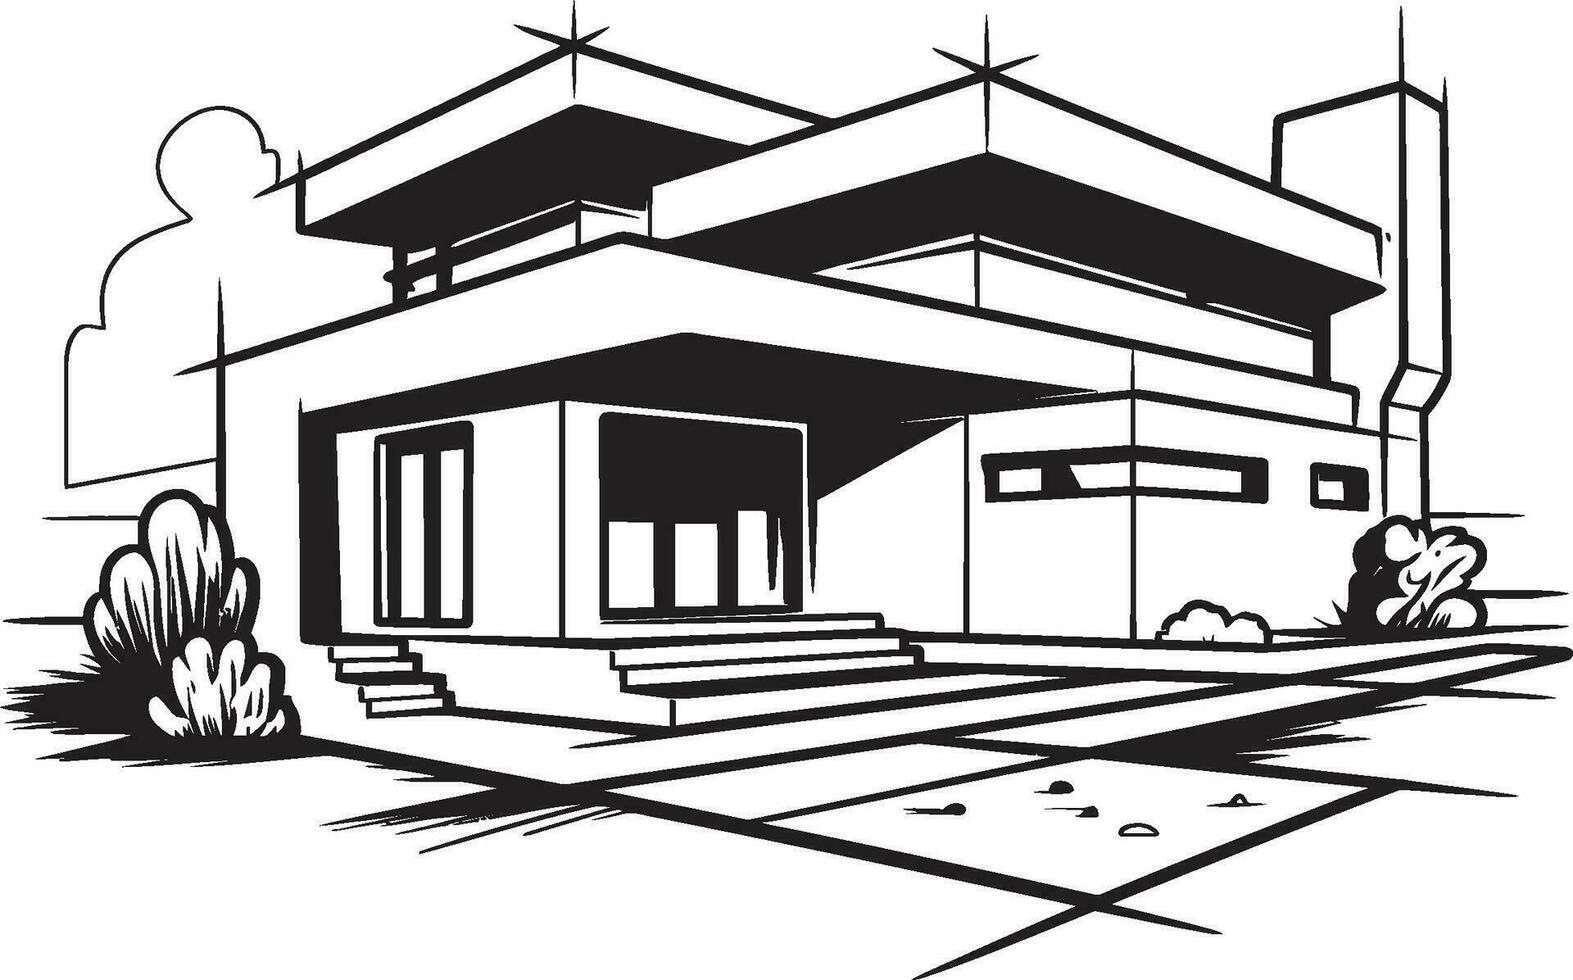 gemelo residencia concepto bosquejo diseño para dúplex casa doble domicilio bosquejo vector logo para dúplex diseño